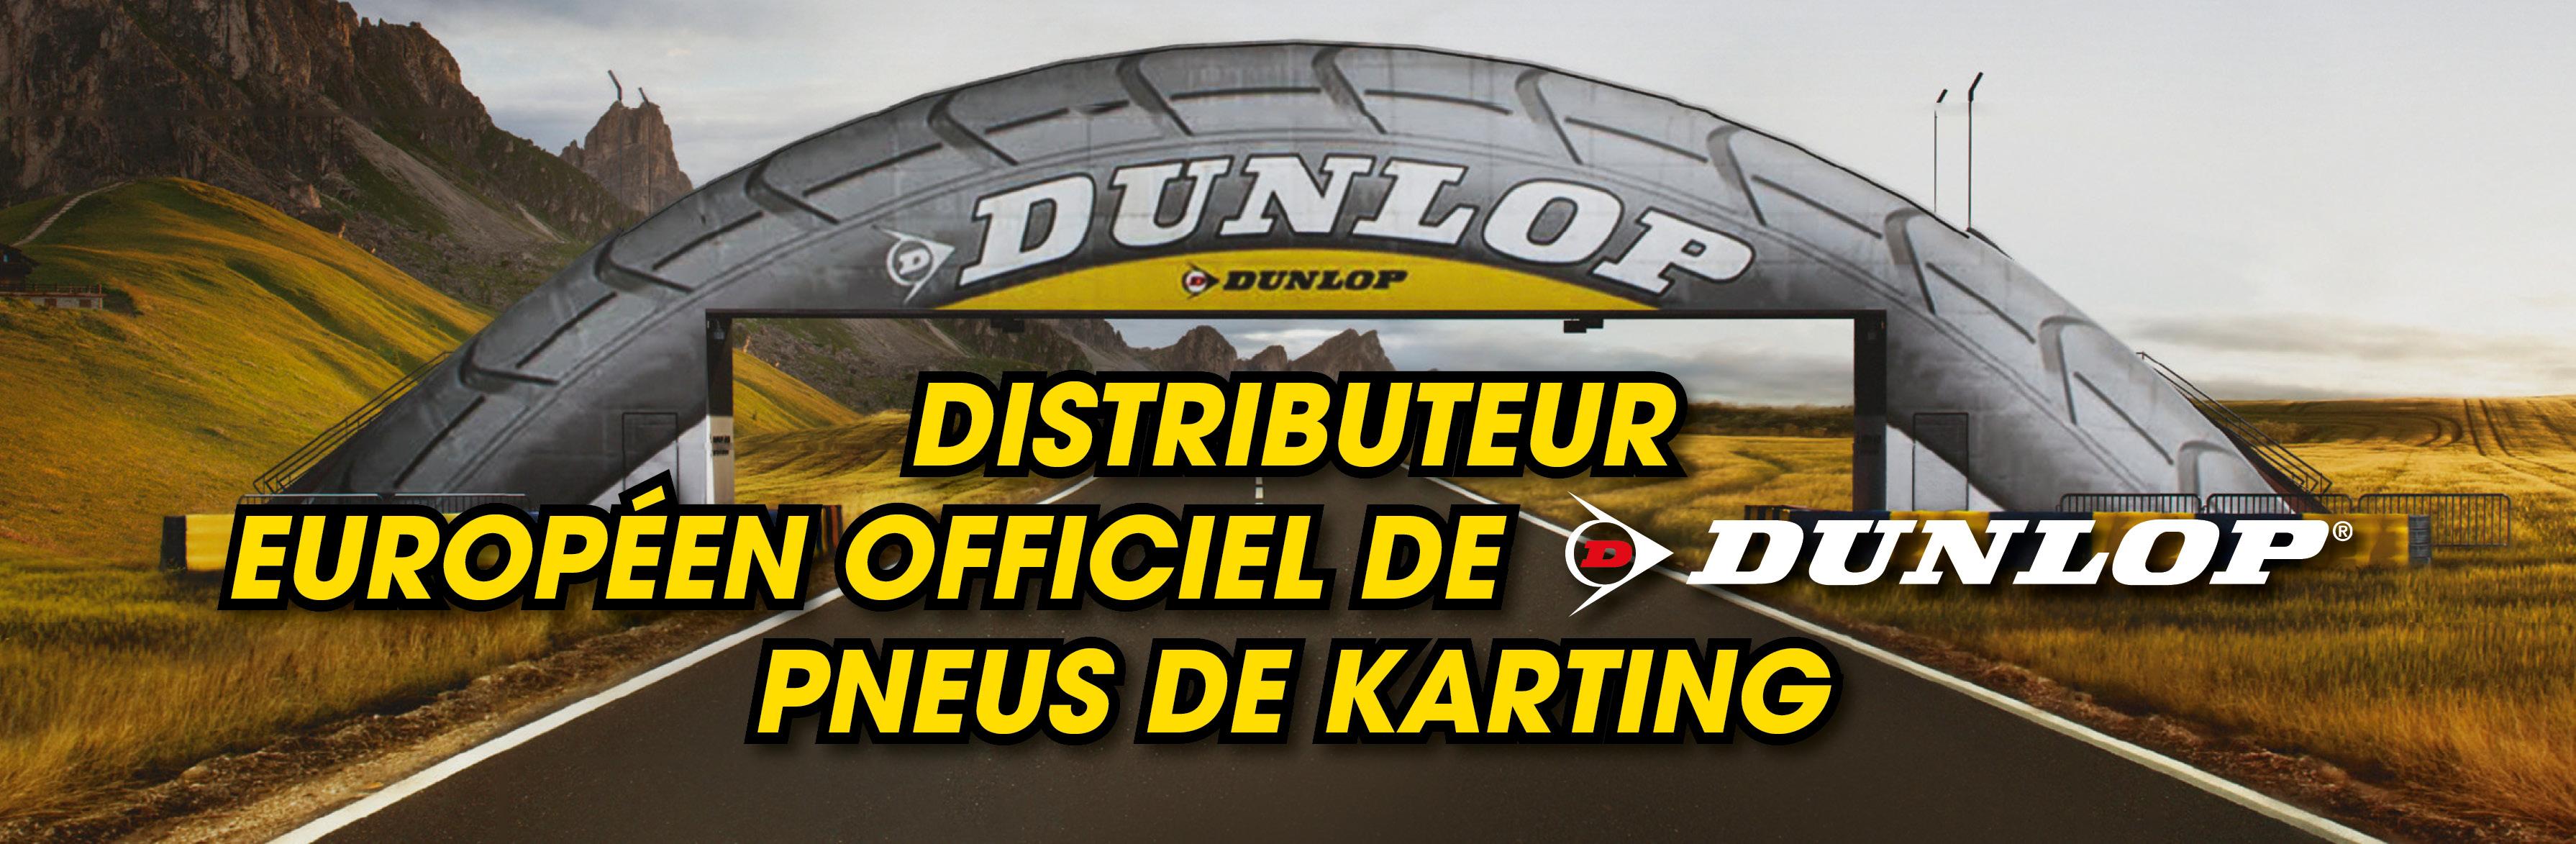 D&M - Distributeur européen officiel des pneus de karting DUNLOP